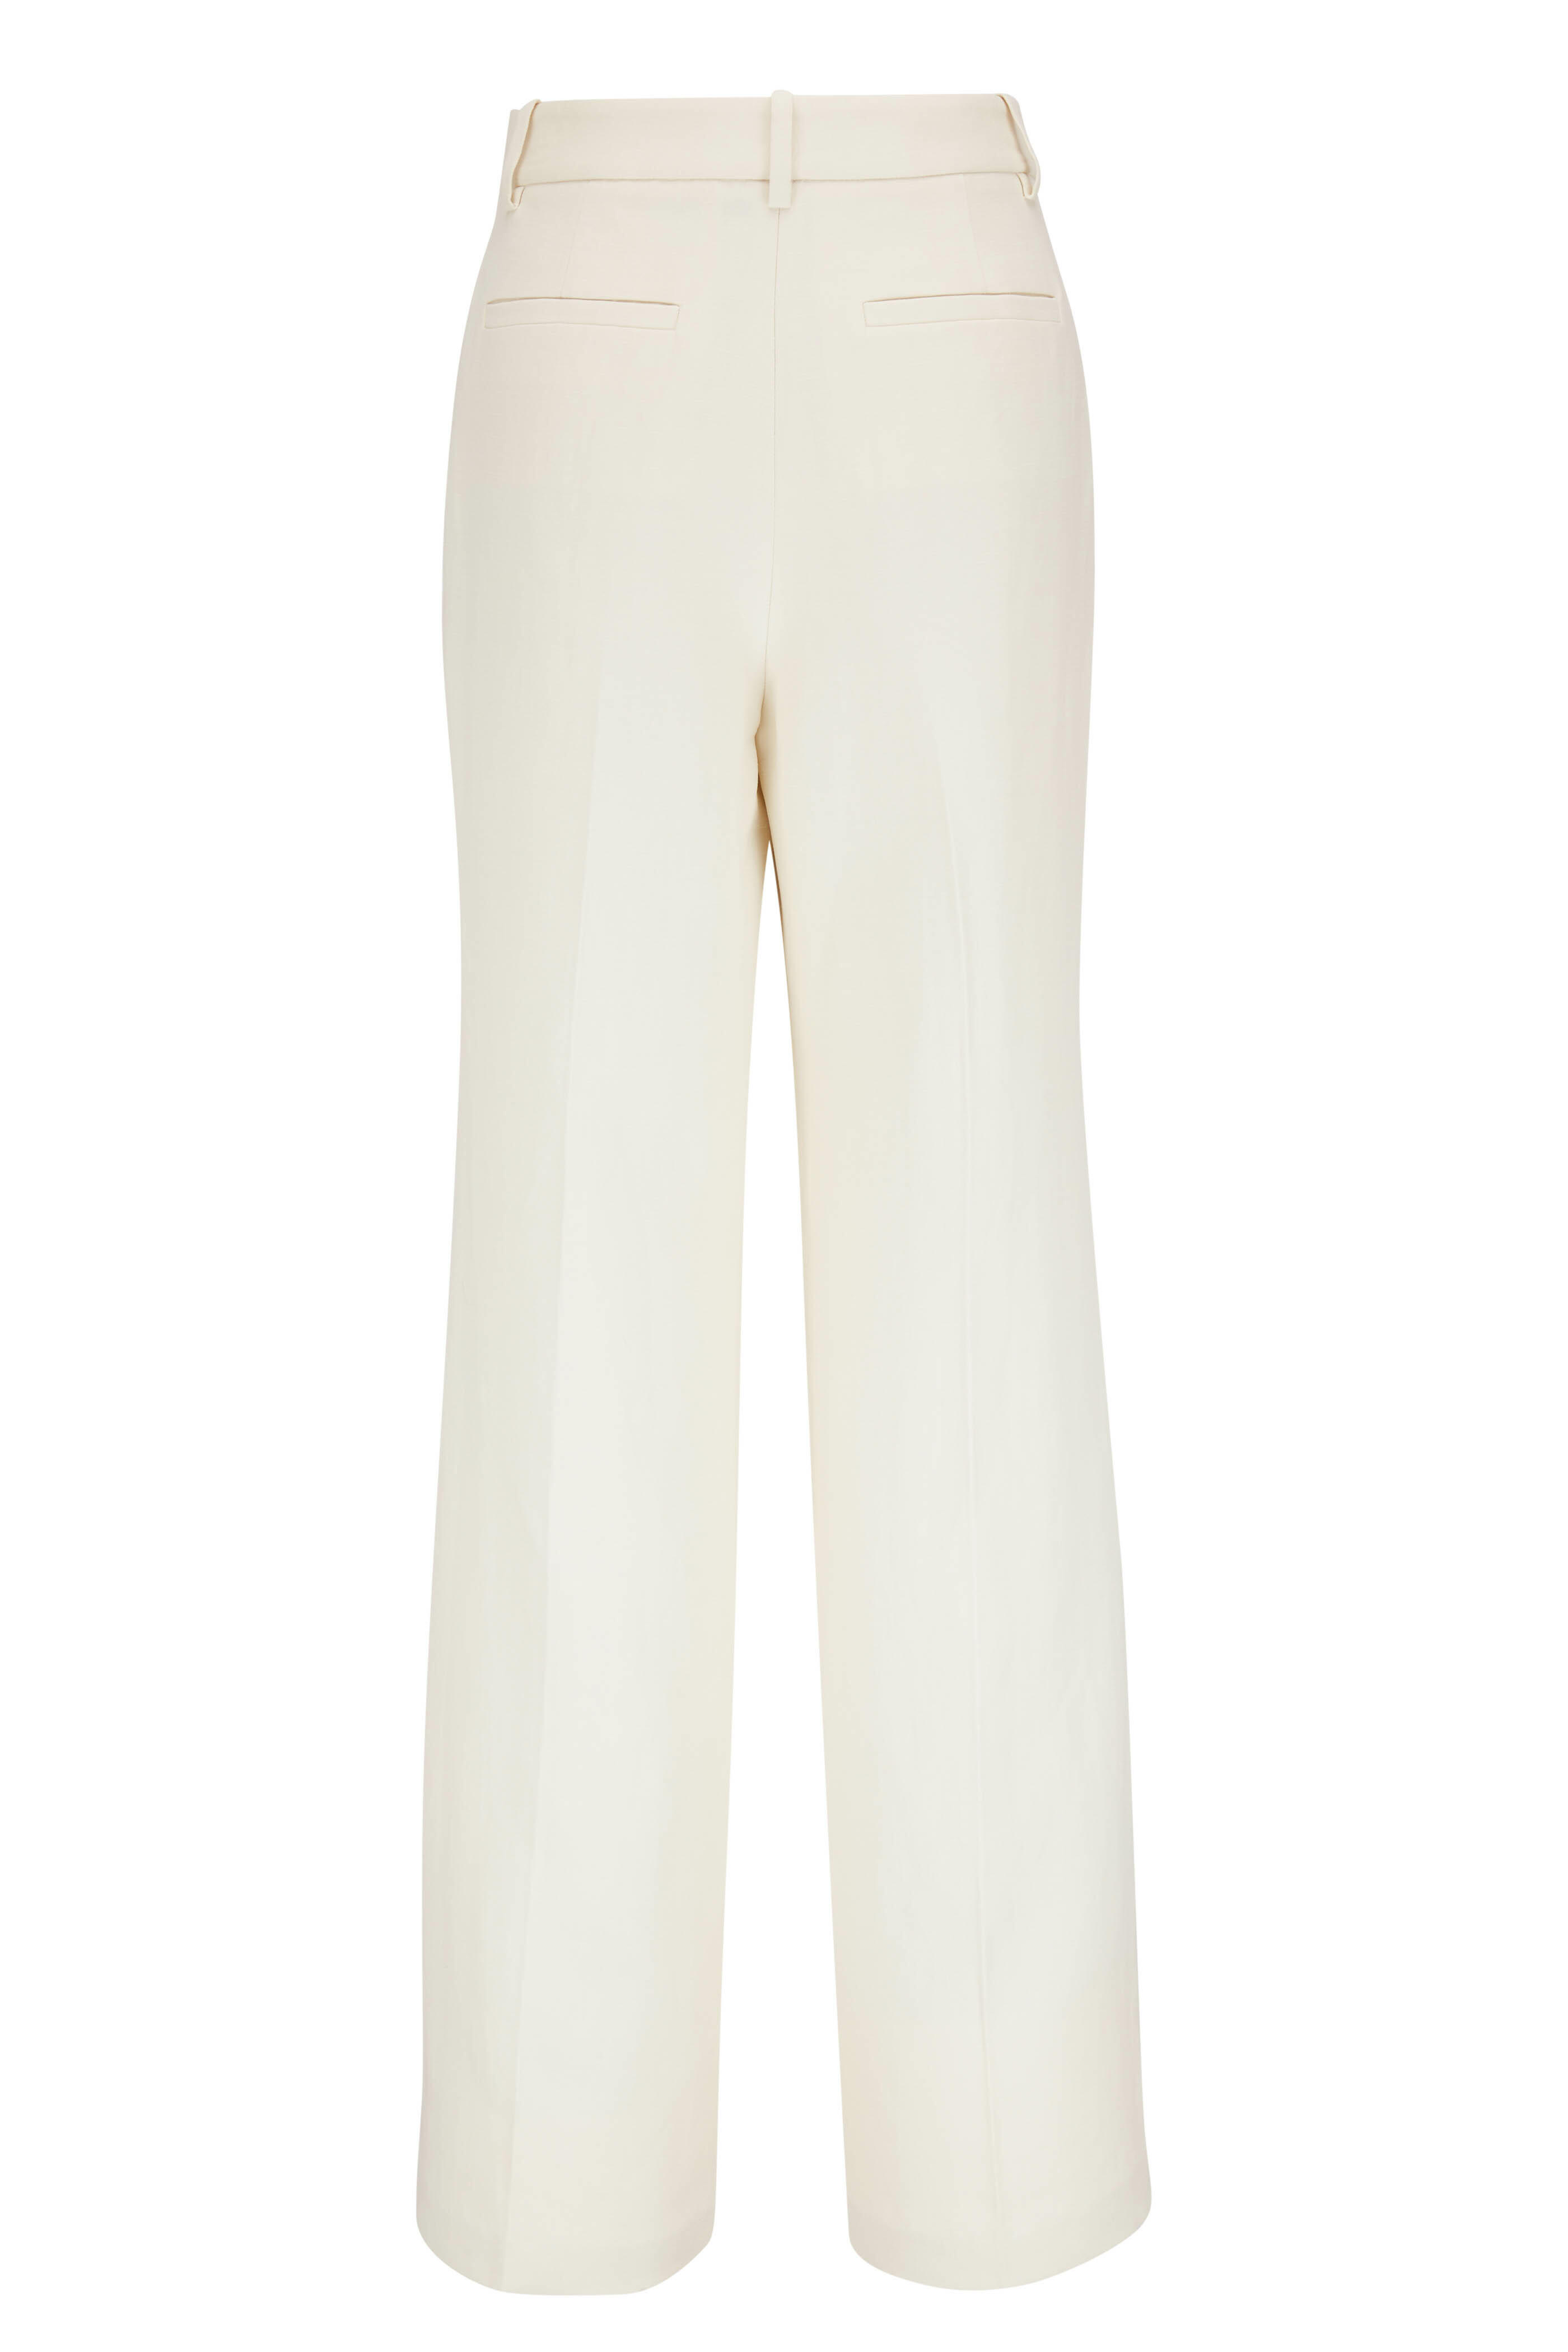 Nili Lotan - Flavie Linen & Cotton Pant | Mitchell Stores